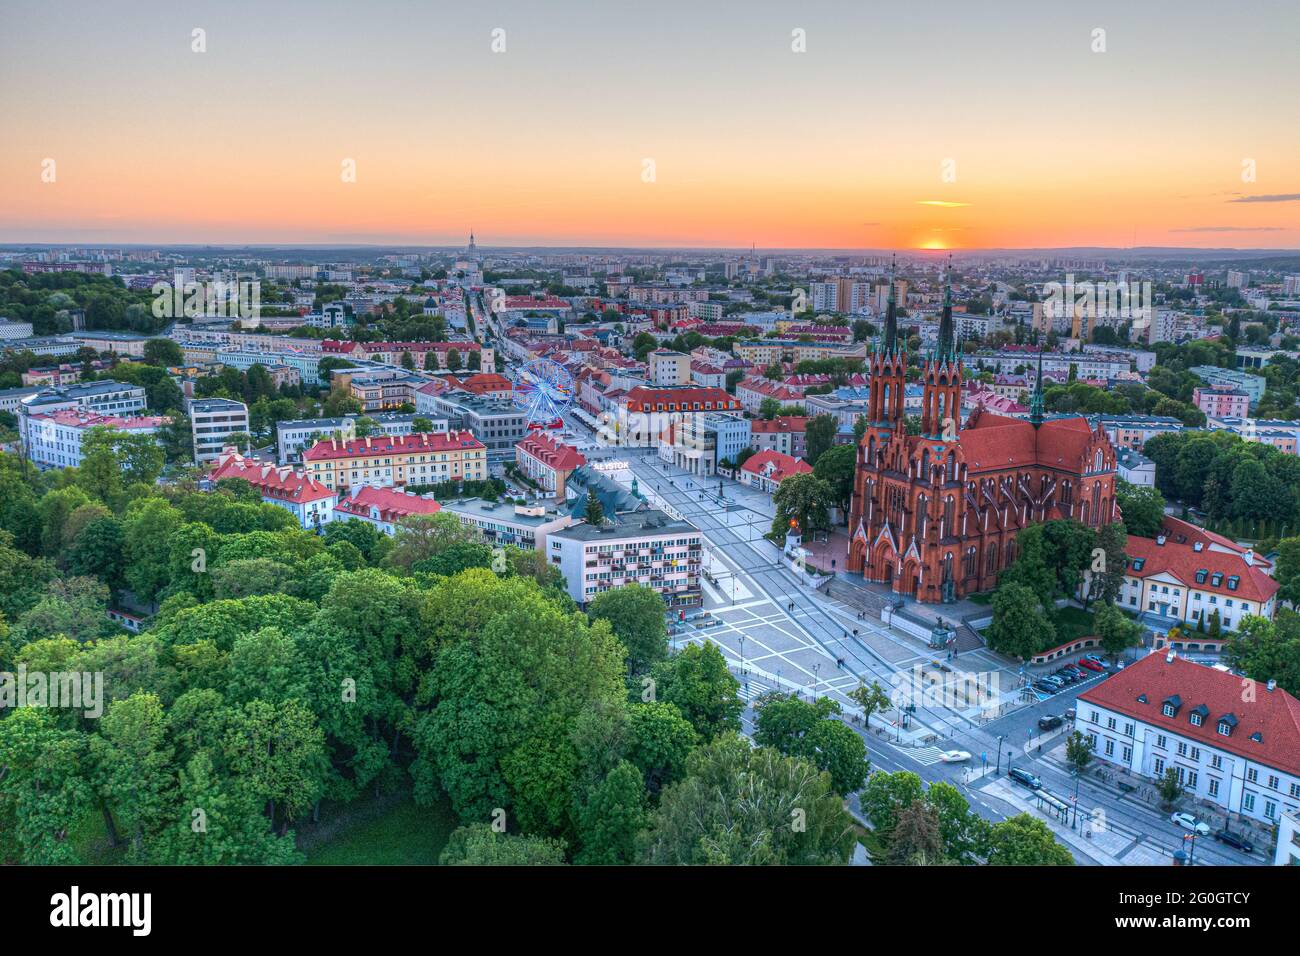 Vue aérienne du coucher de soleil sur la ville de Bialystok, Pologne Banque D'Images